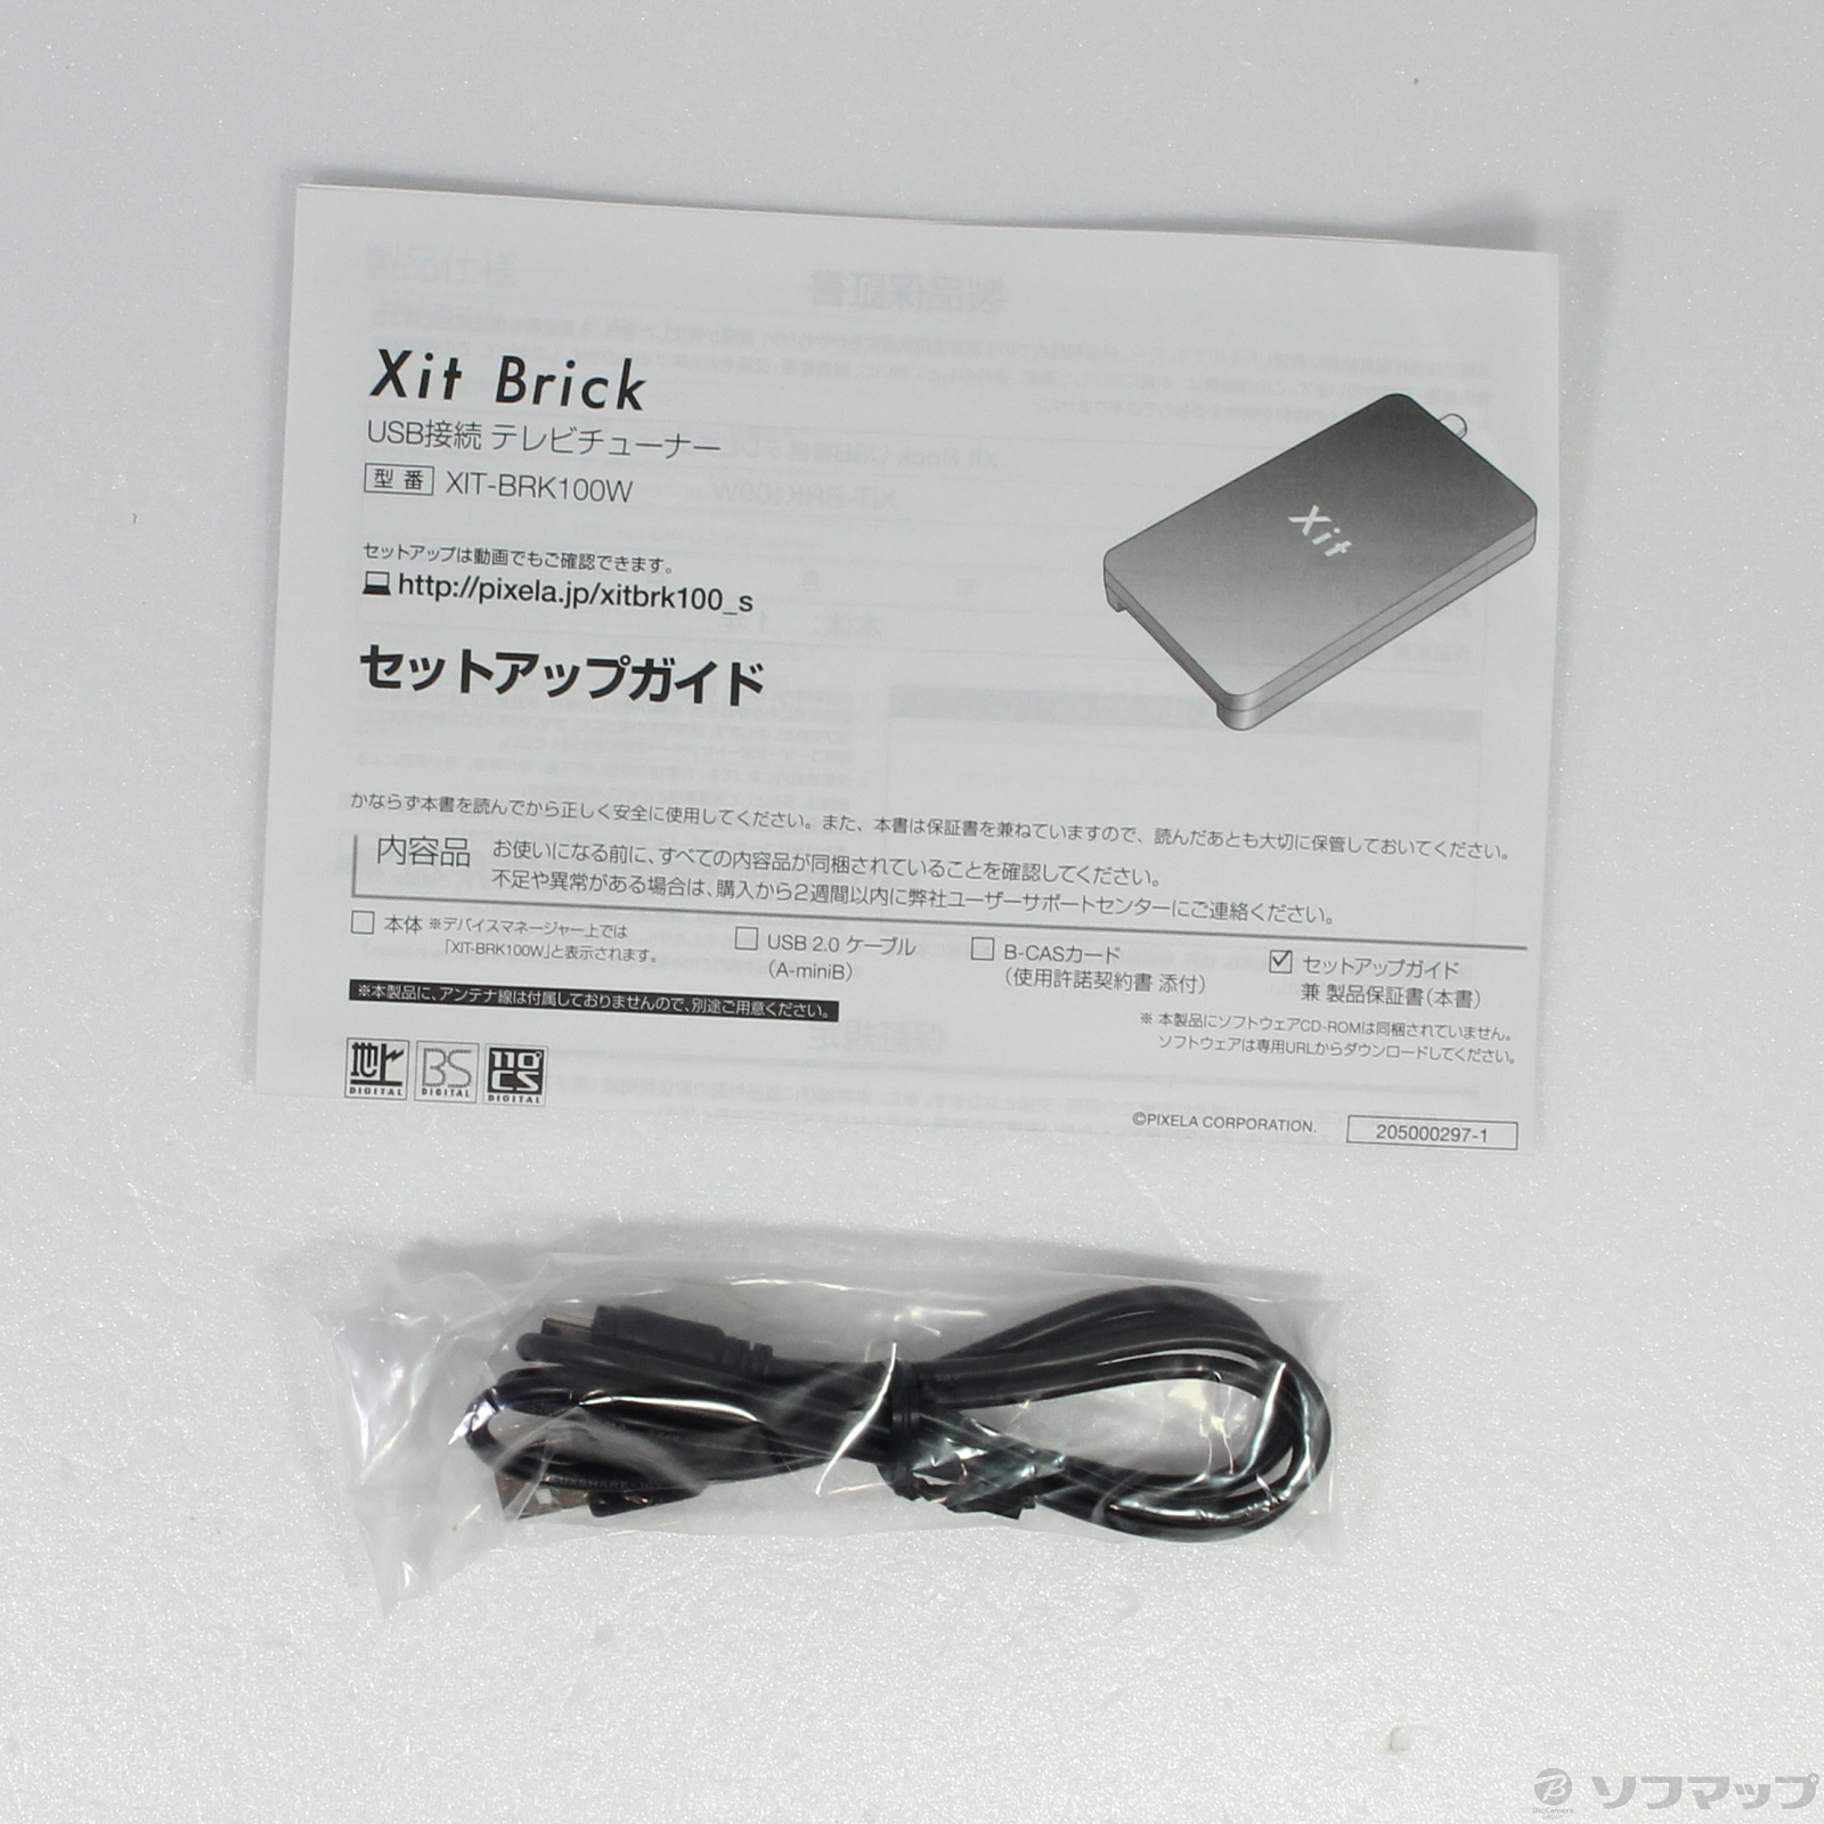 レビュー高評価のおせち贈り物 ピクセラ Xit Brick USB接続 テレビチューナー